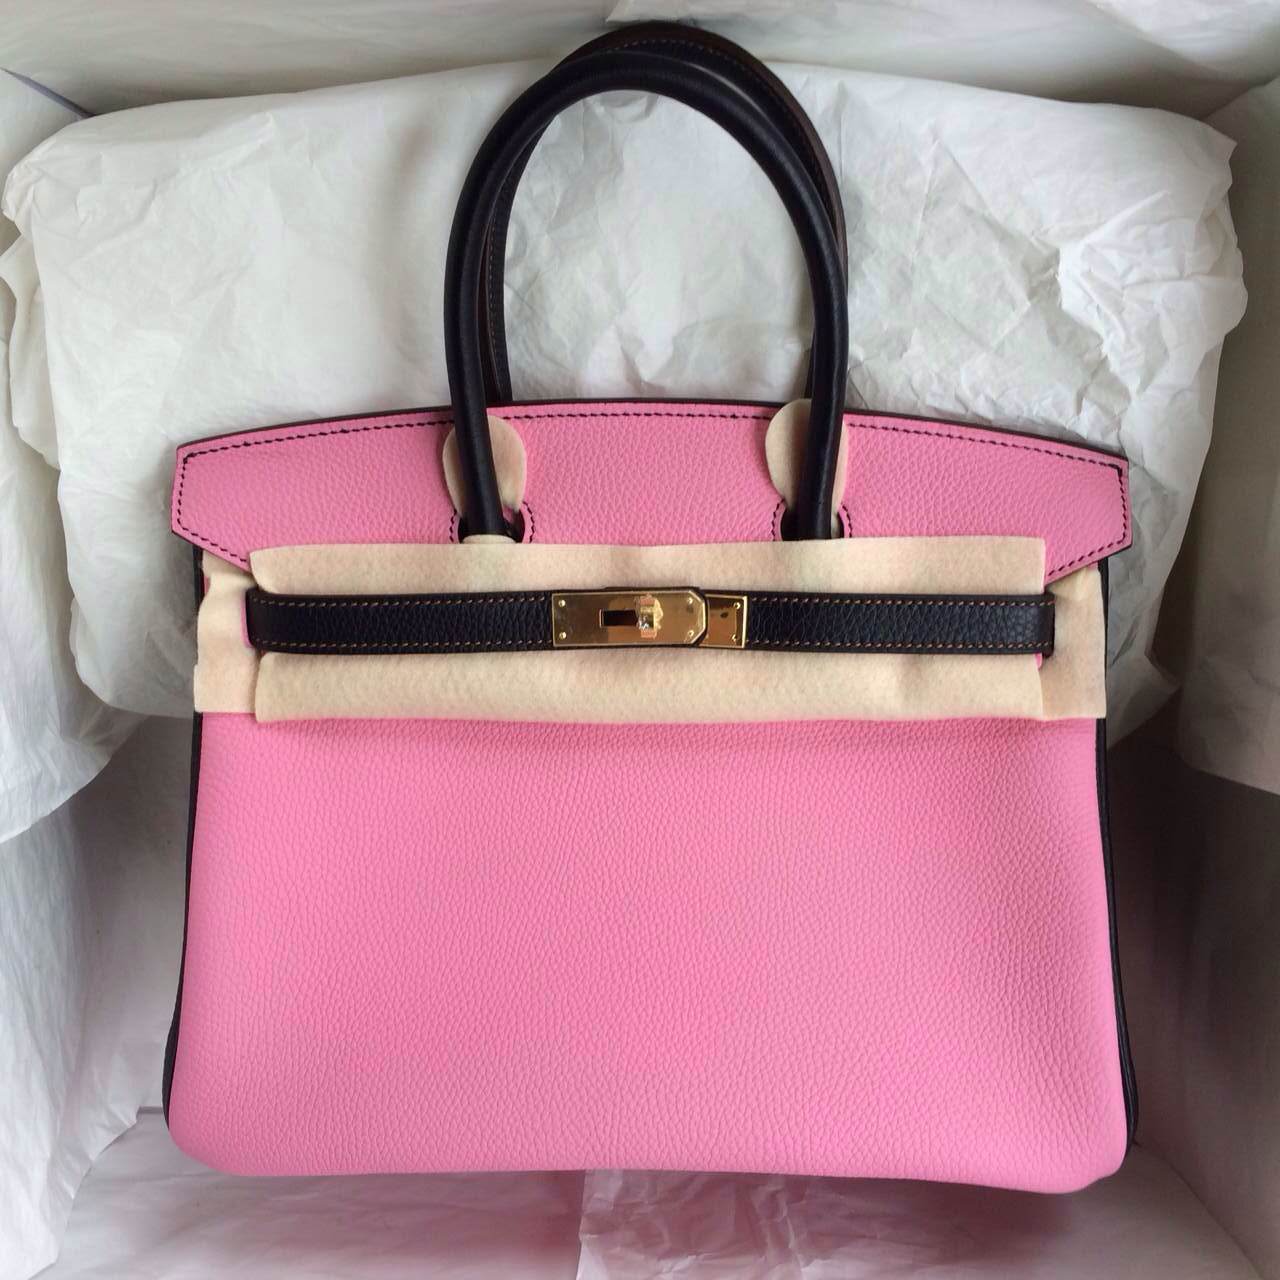 5P Pink/Black France Togo Leather Hermes Birkin Bag Gold Hardware